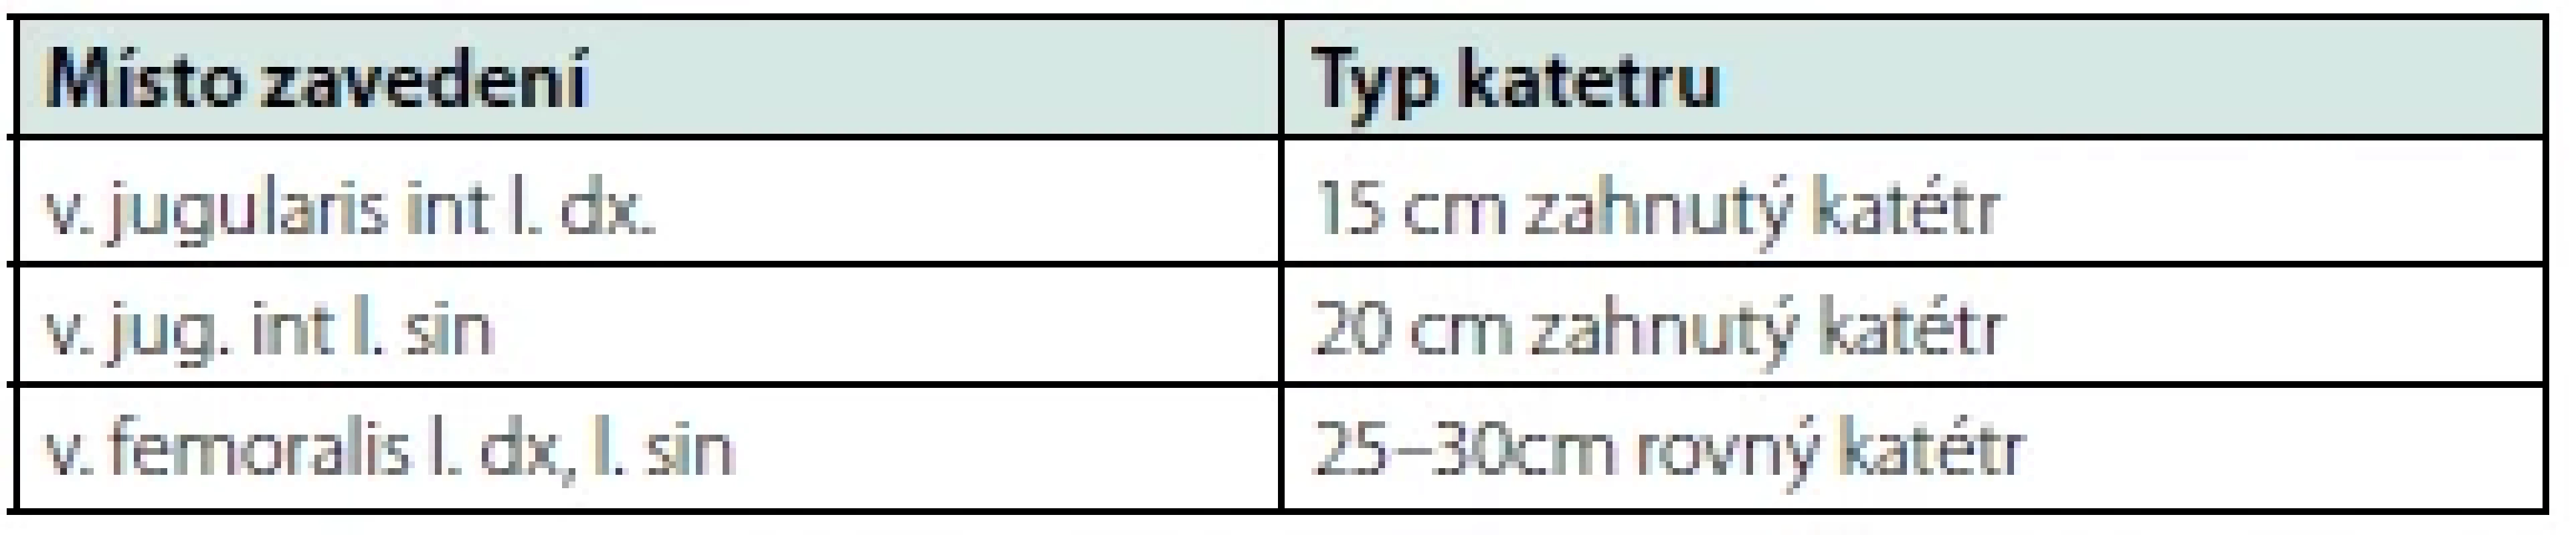 Volba typu a délky netunelizovaného katétru podle místa zavedení